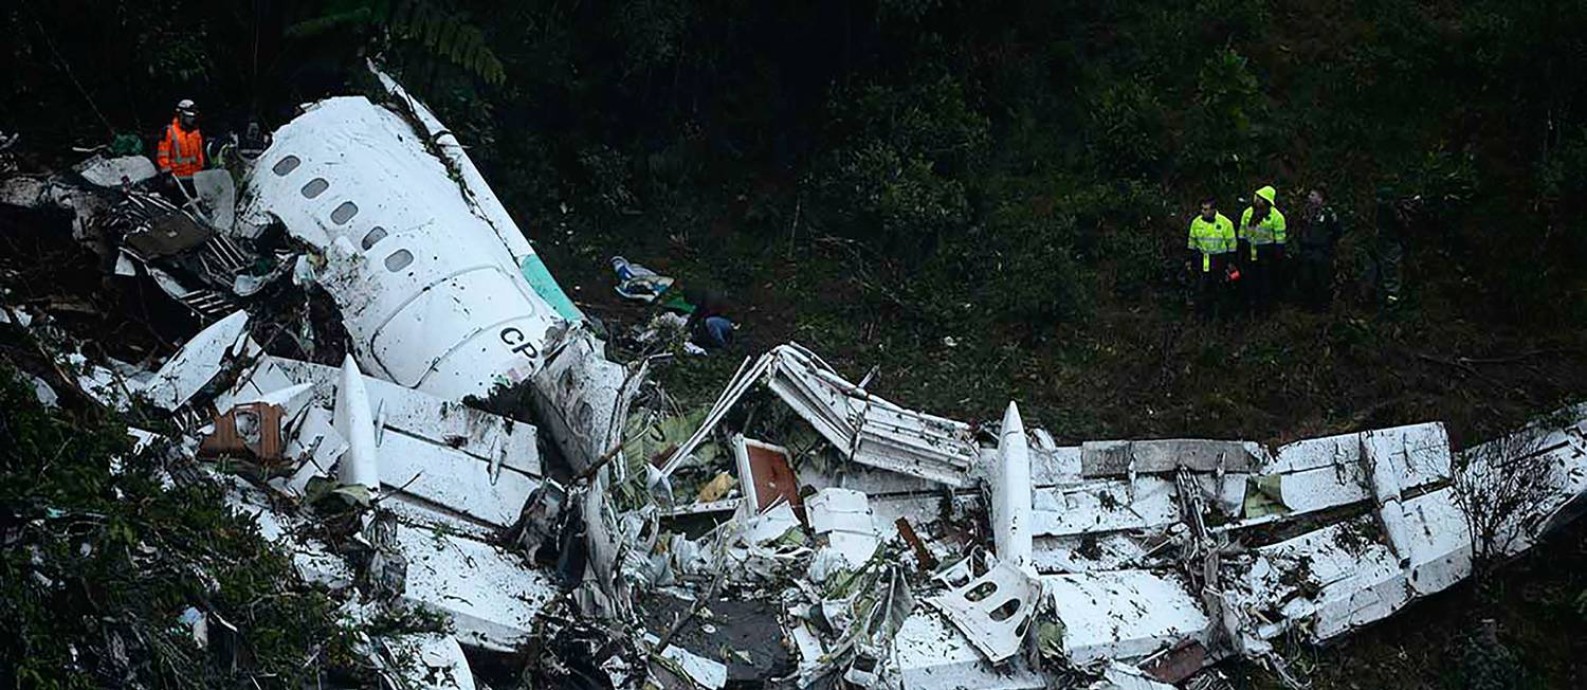 Destroços do voo da Chapecoense na Colômbia: queda do avião deixou mais de 70 mortos Foto: RAUL ARBOLEDA / AFP